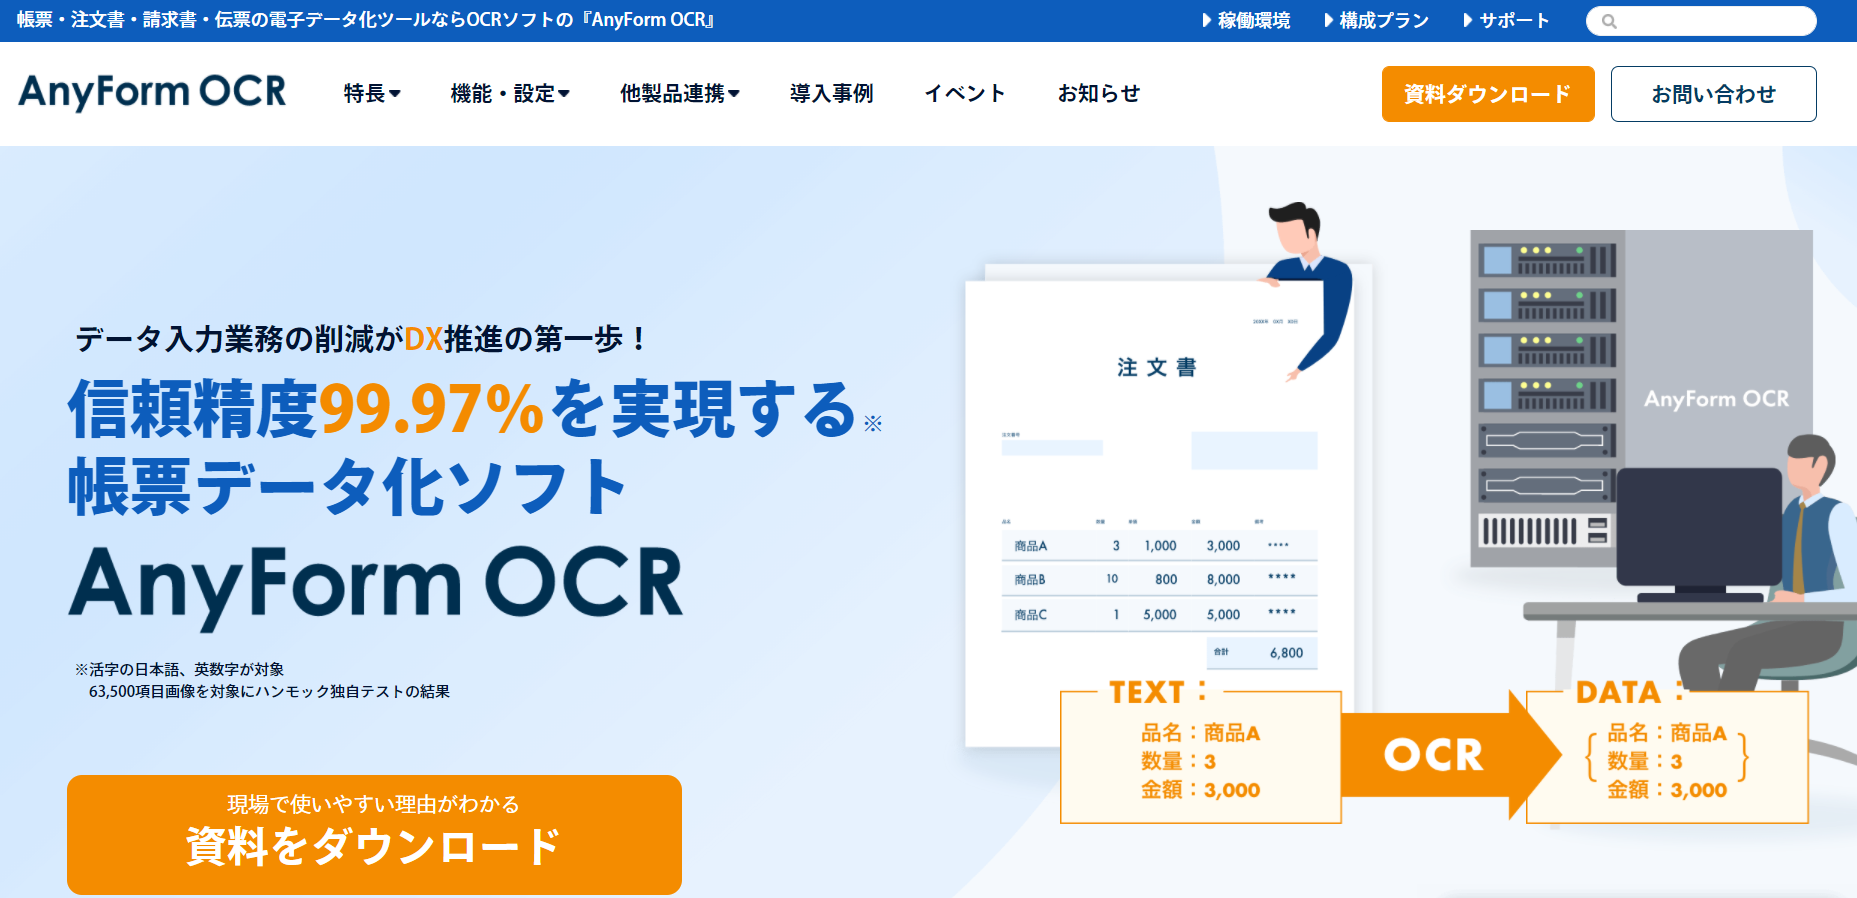 Anyform OCR 公式サイト